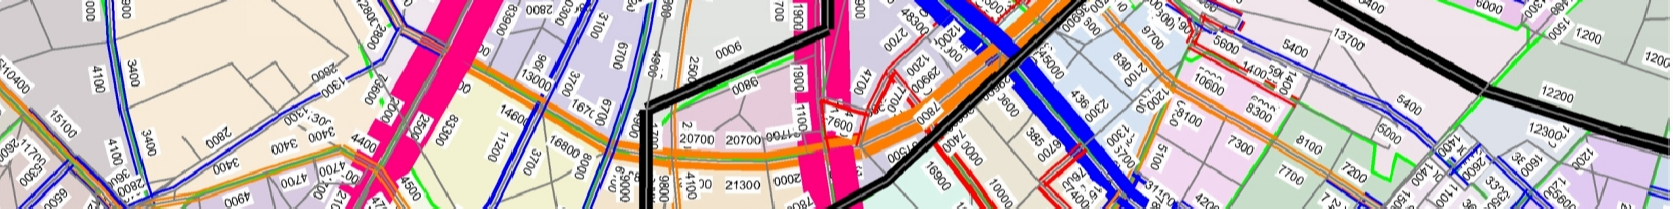 Lehel utca Róbert Károly körút csomópont: Üzemi kapcsolat a Lehel úti villamospályával két irányban Ph100/60, Ph100/100 kitér kb l (Angyalföld kocsiszín